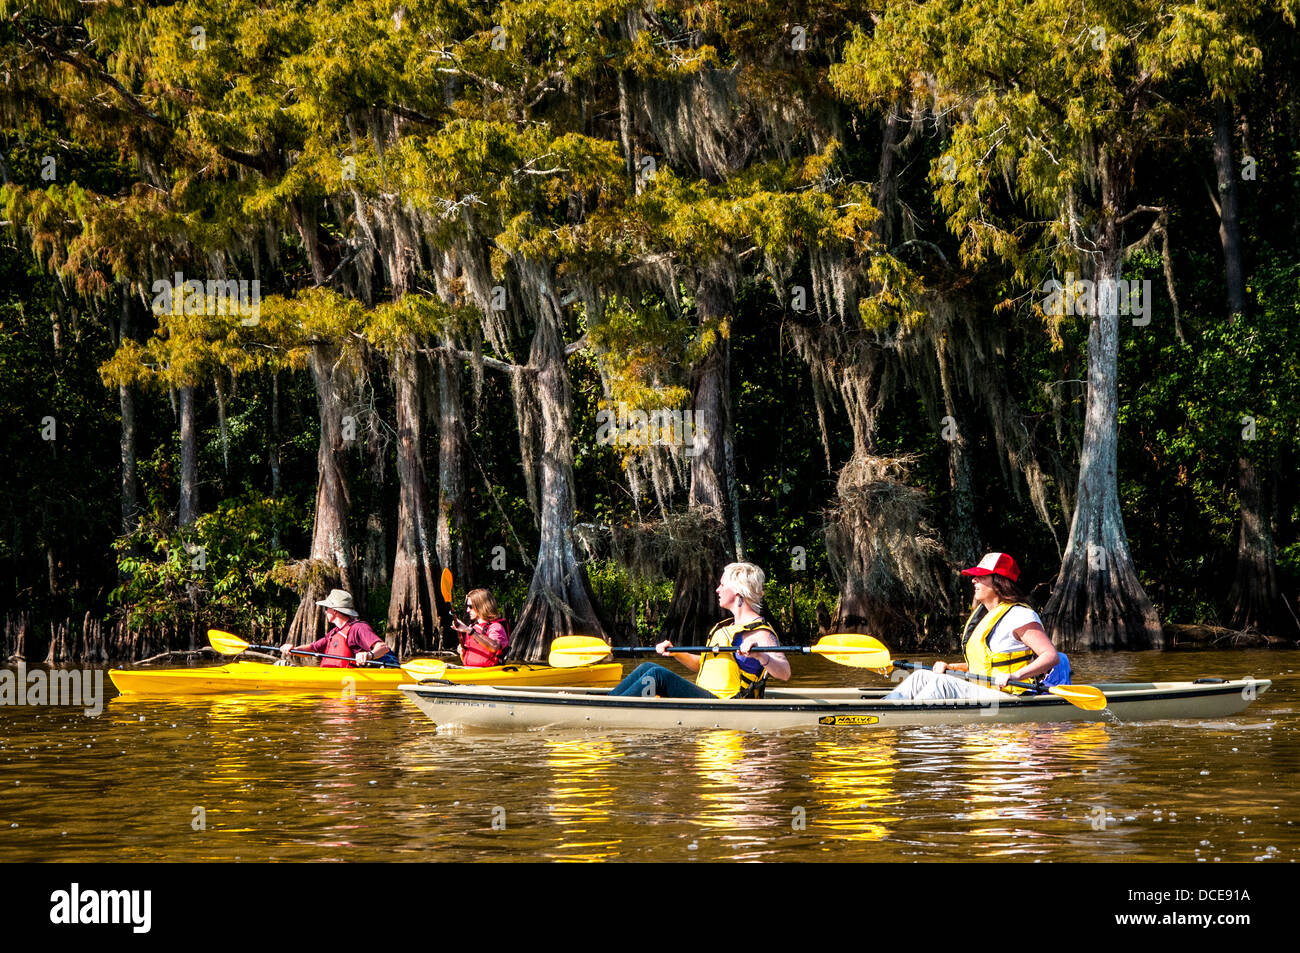 USA, Louisiane, bassin Atchafalaya, lac Fausse Point State Park, kayakistes au milieu de la mousse espagnole. Banque D'Images